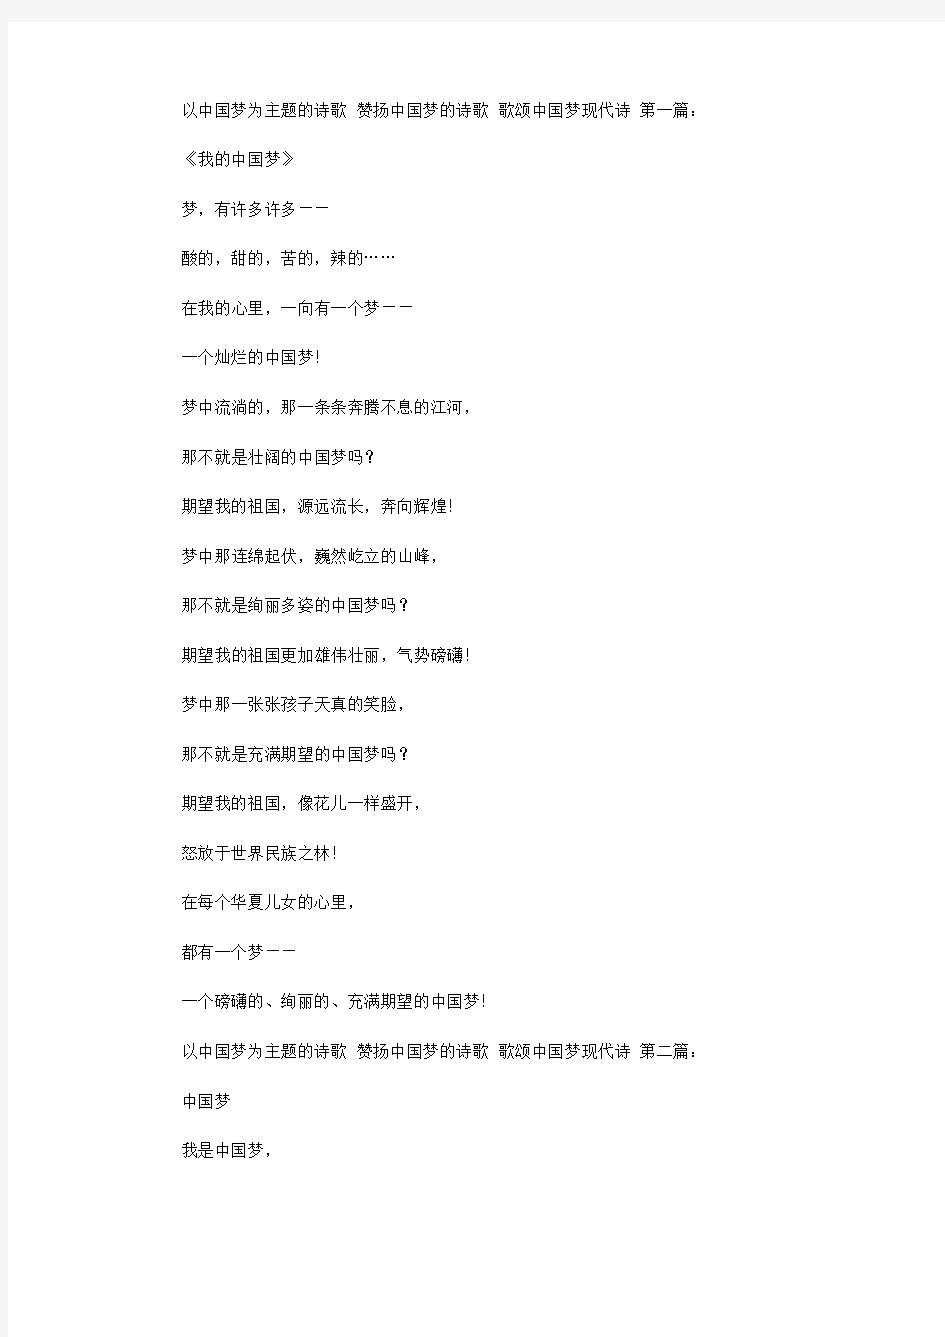 以中国梦为主题的诗歌 赞扬中国梦的诗歌 歌颂中国梦现代诗(28首)